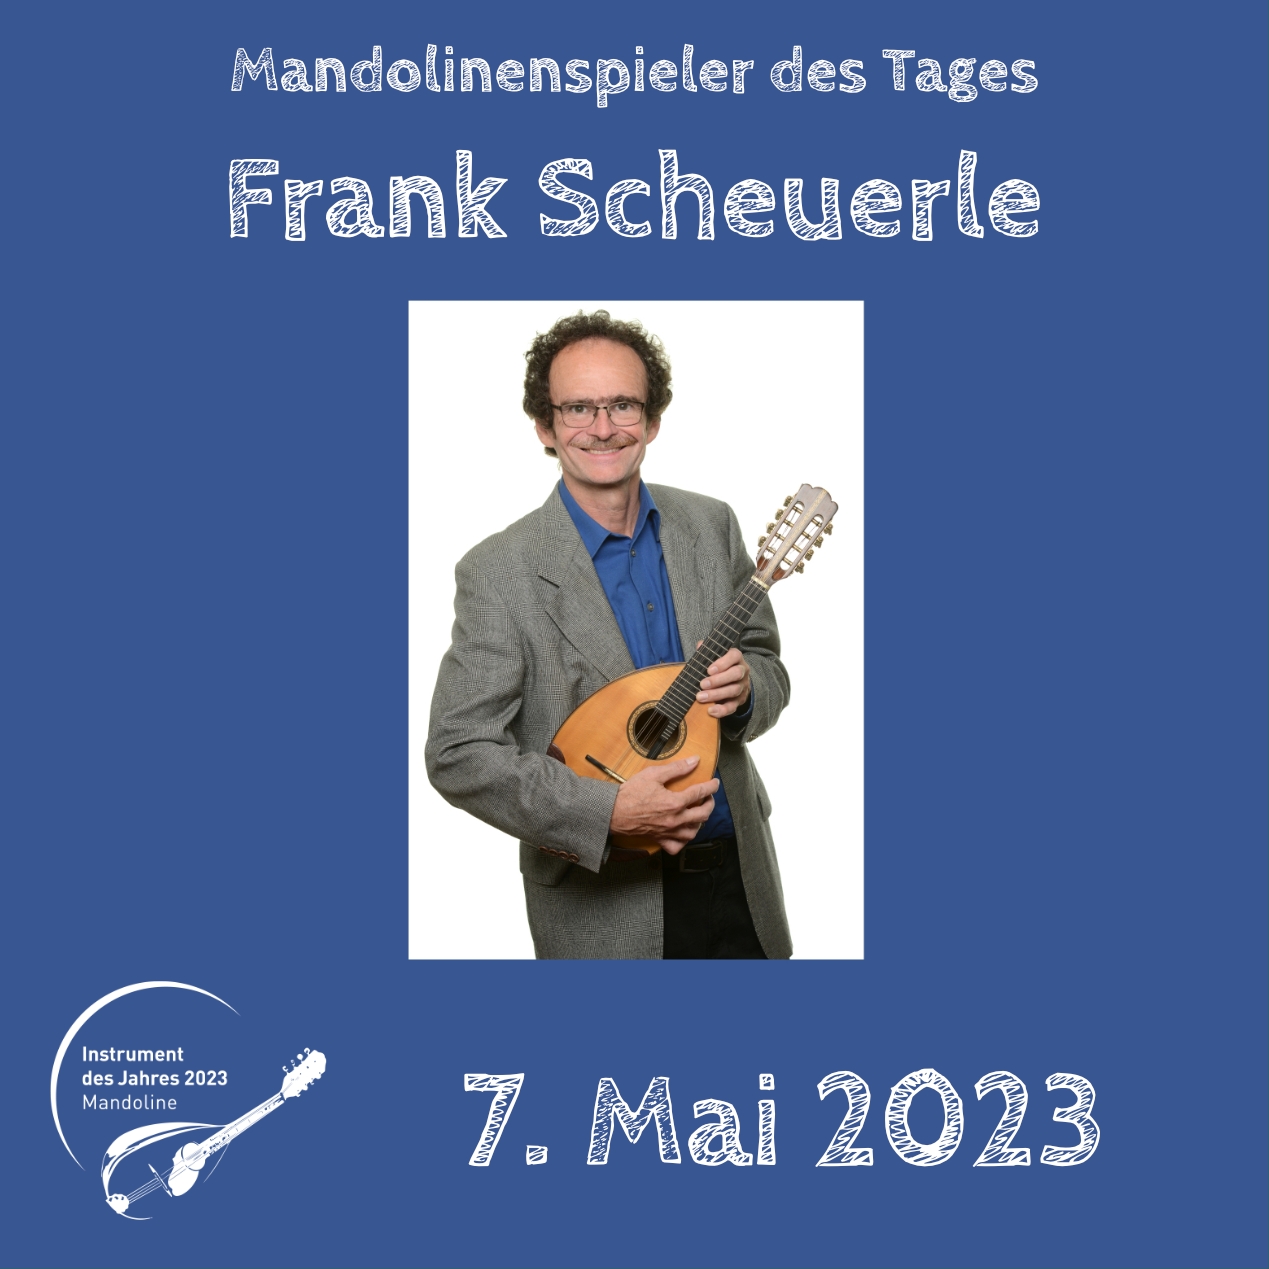 Frank Scheuerle Mandoline Instrument des Jahres 2023 Mandolinenspieler Mandolinenspielerin des Tages